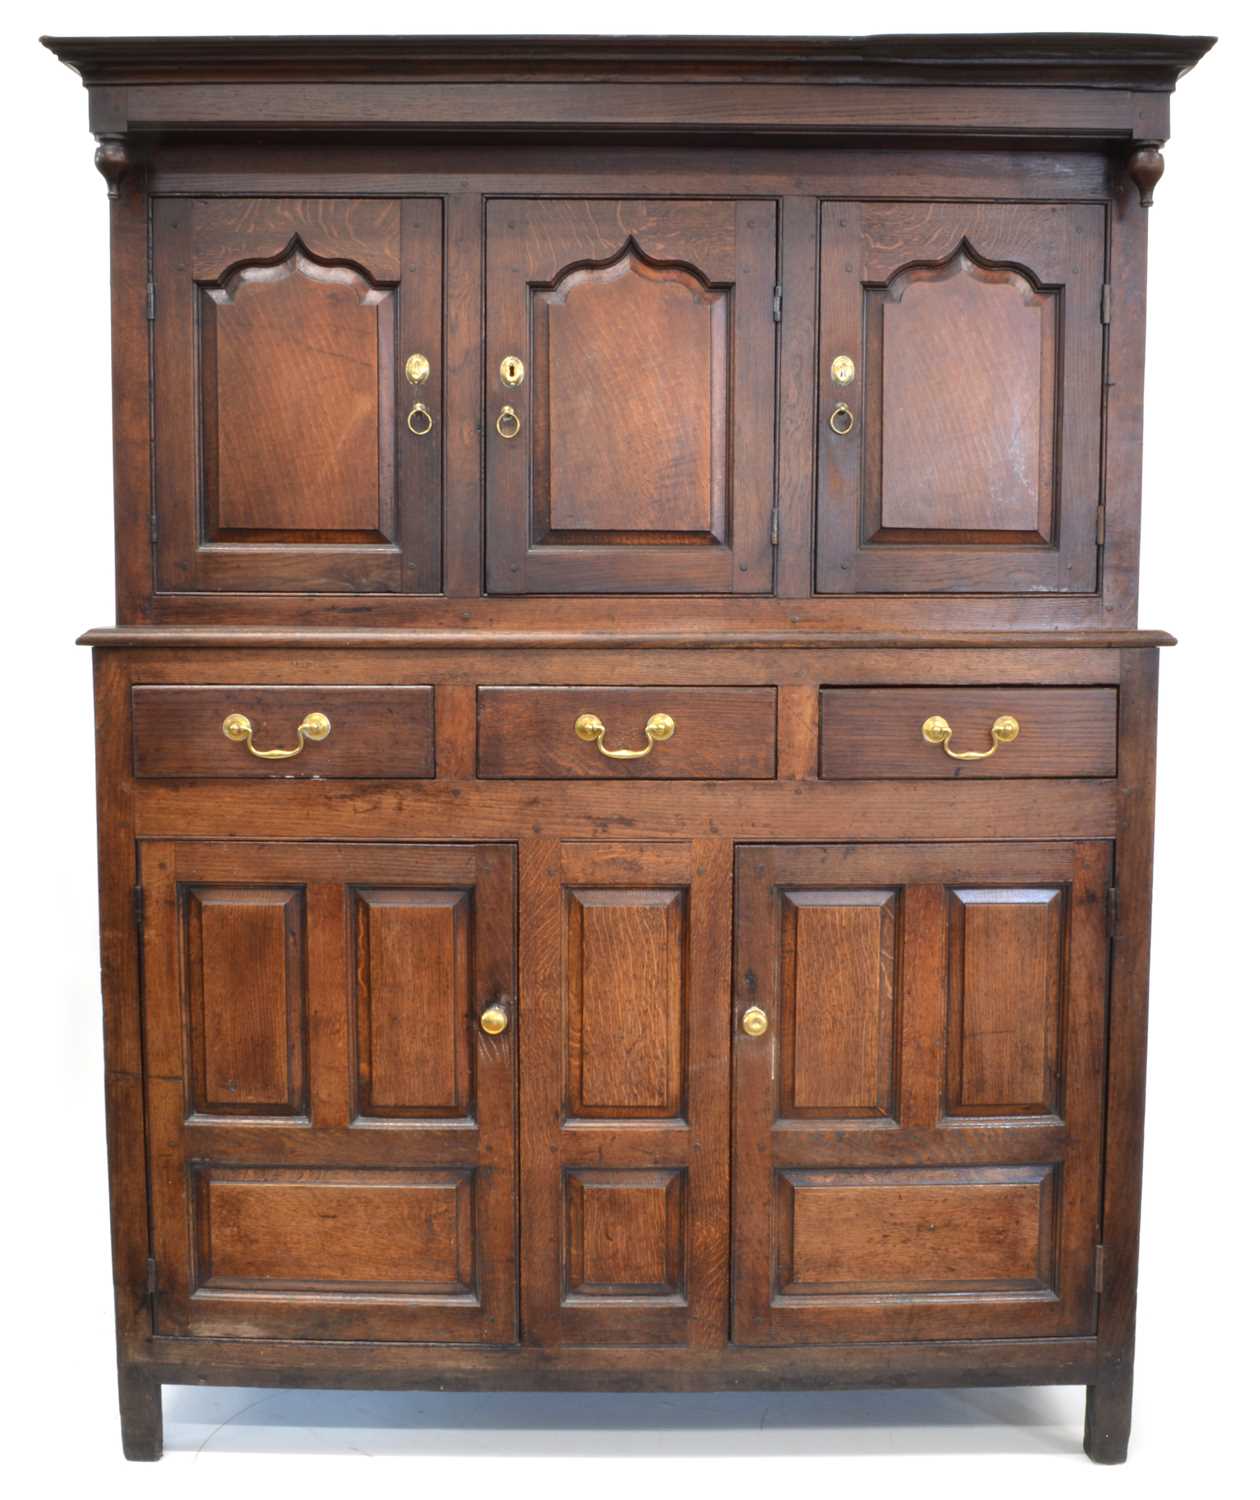 Lot 18th century oak court cupboard or cwpwrdd deuddarn